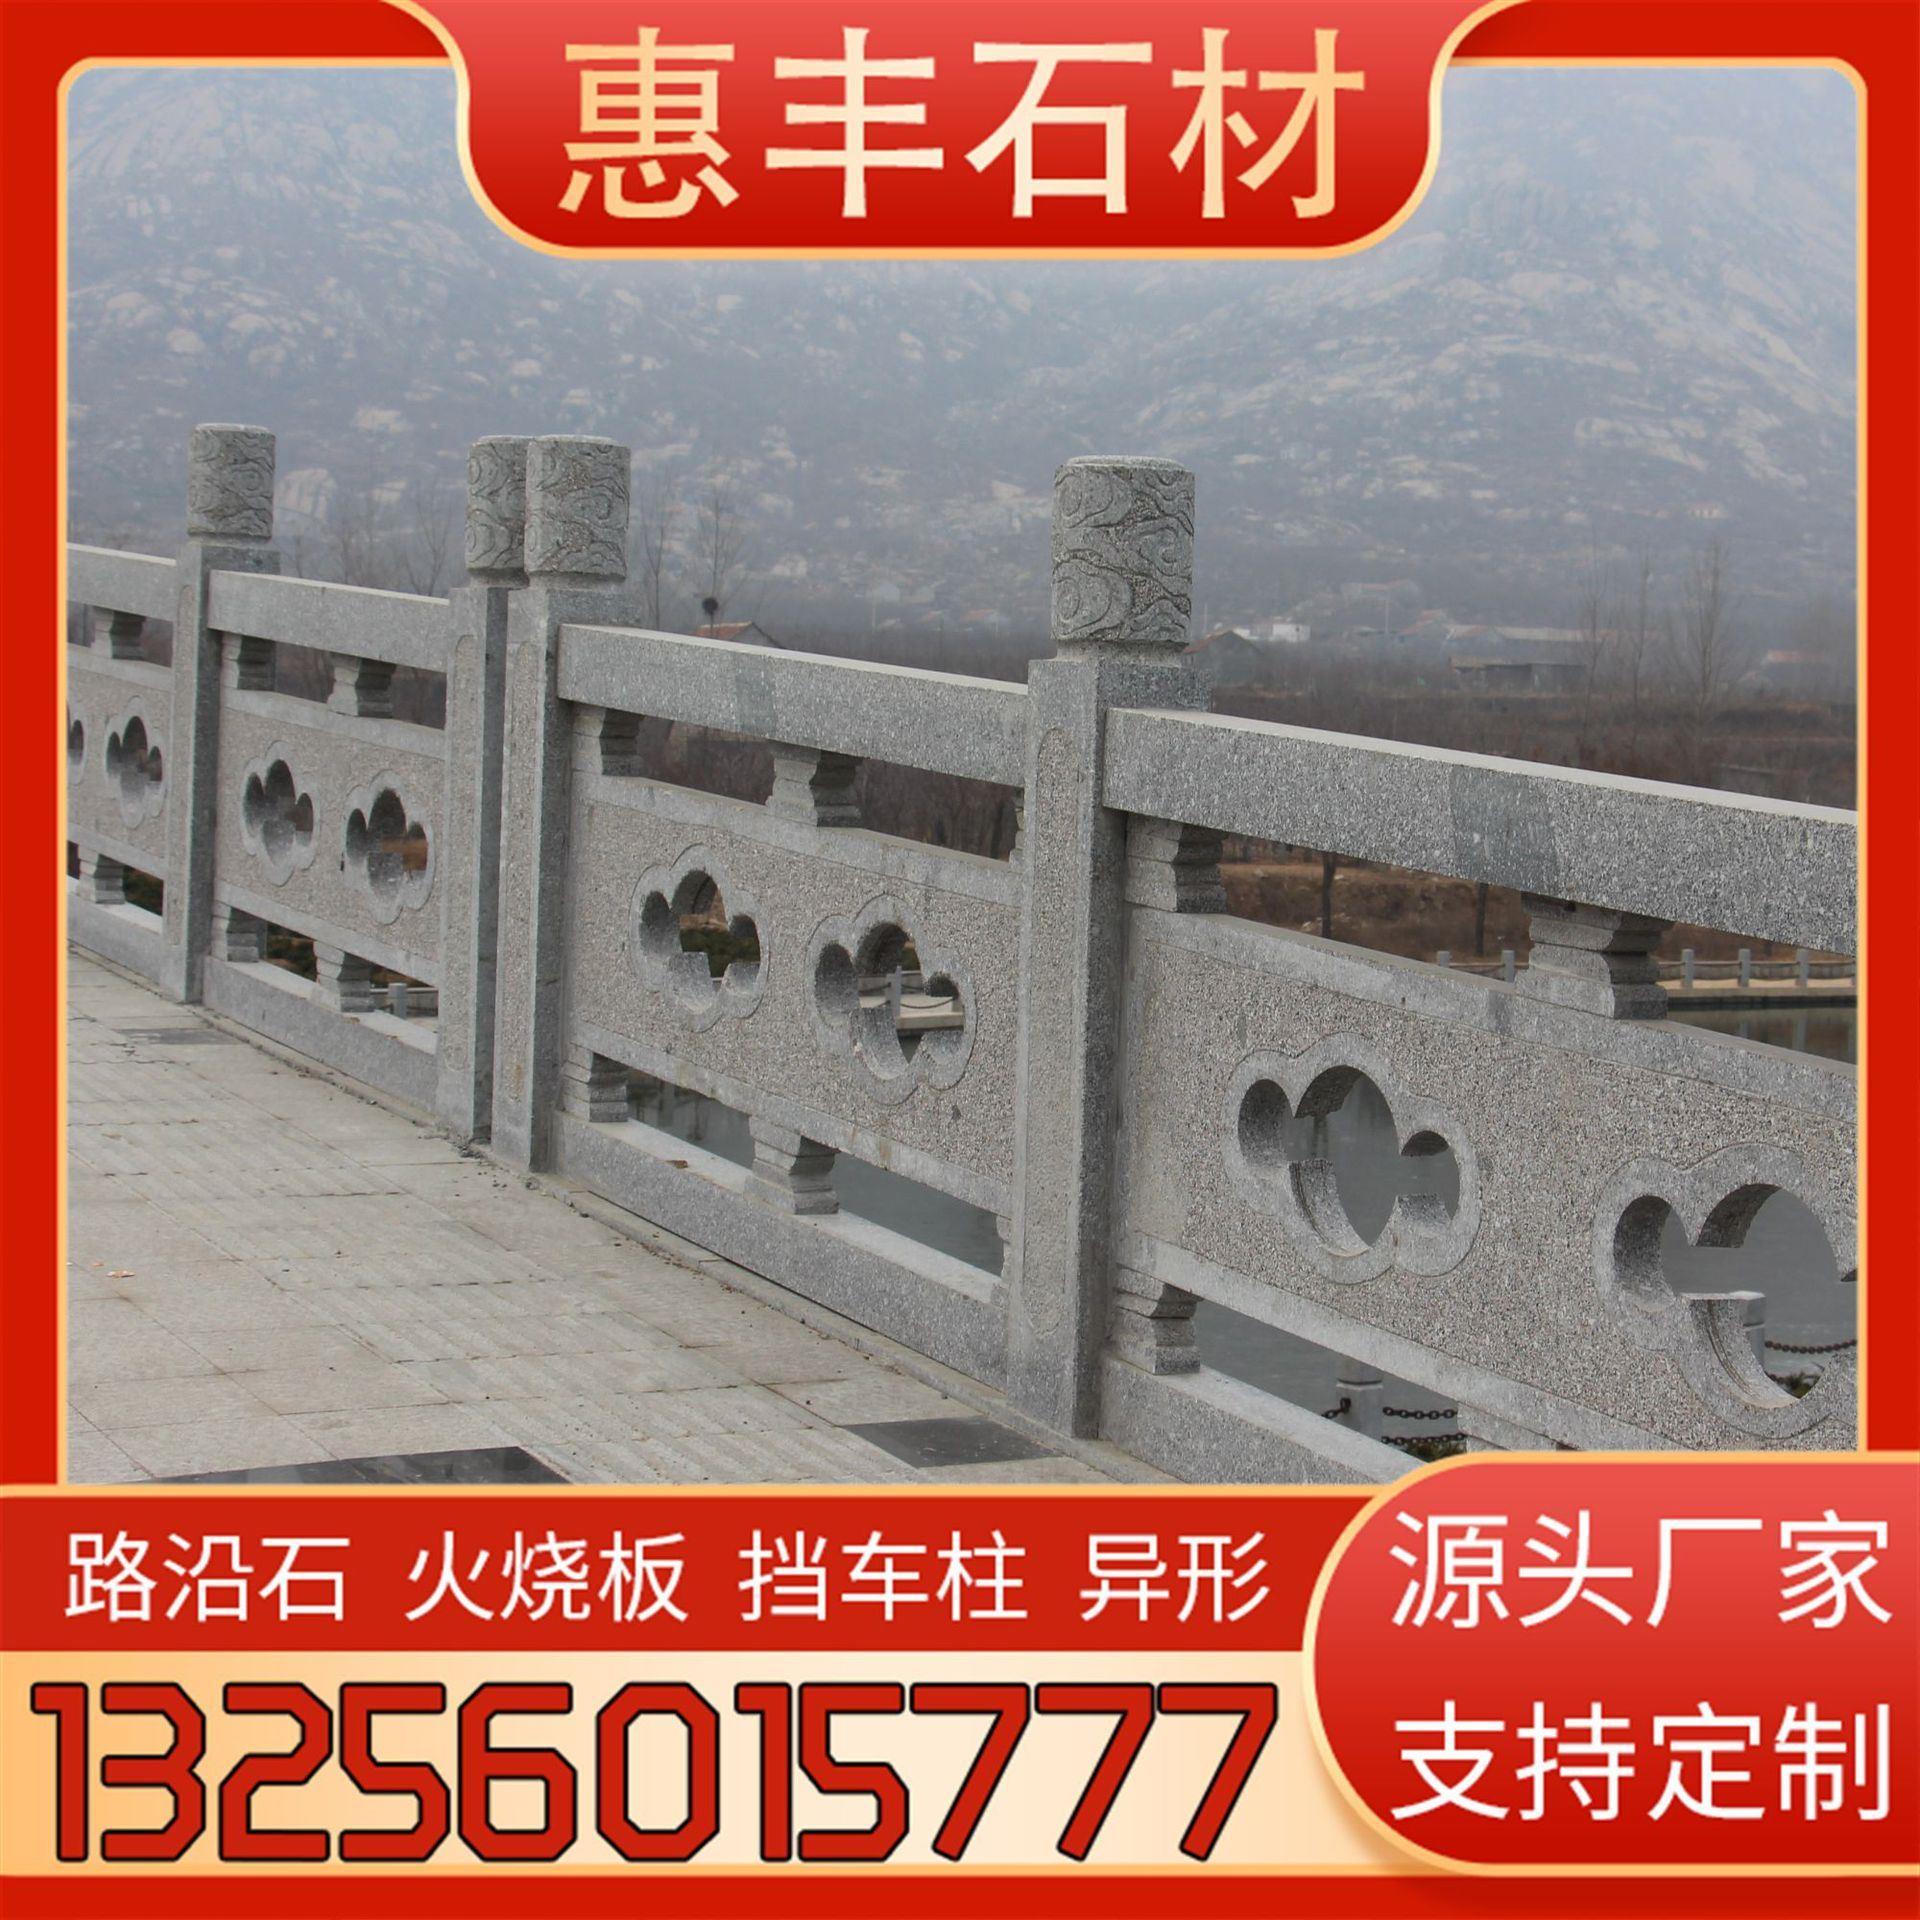 花岗岩石材防护桥栏杆河道护城河两侧用镂空雕刻异形汉白玉围栏